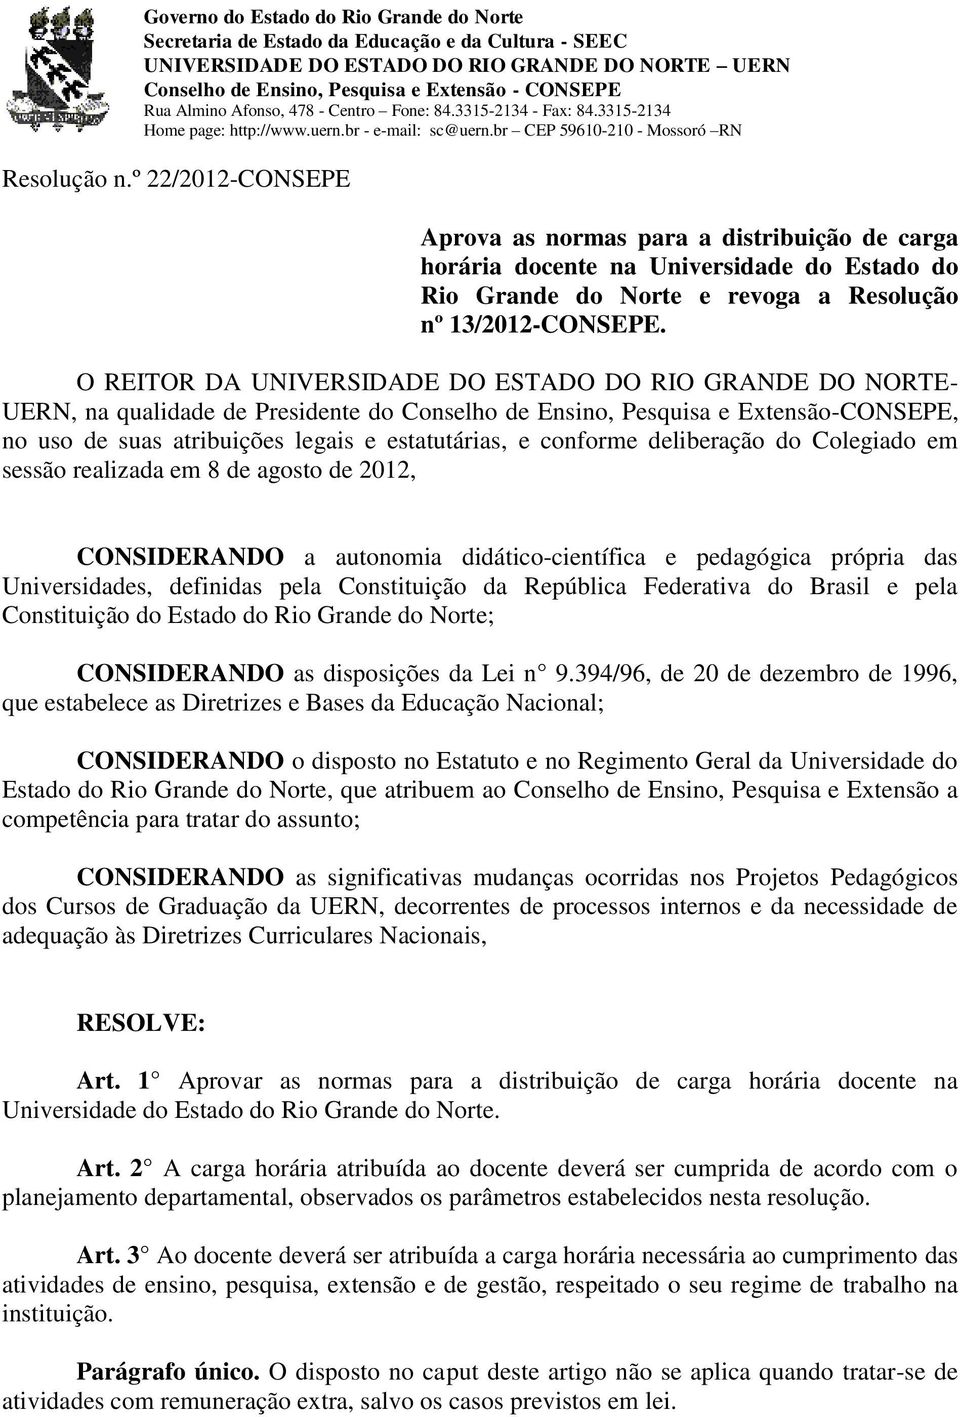 º 22/2012-CONSEPE Aprova as normas para a distribuição de carga horária docente na Universidade do Estado do Rio Grande do Norte e revoga a Resolução nº 13/2012-CONSEPE.